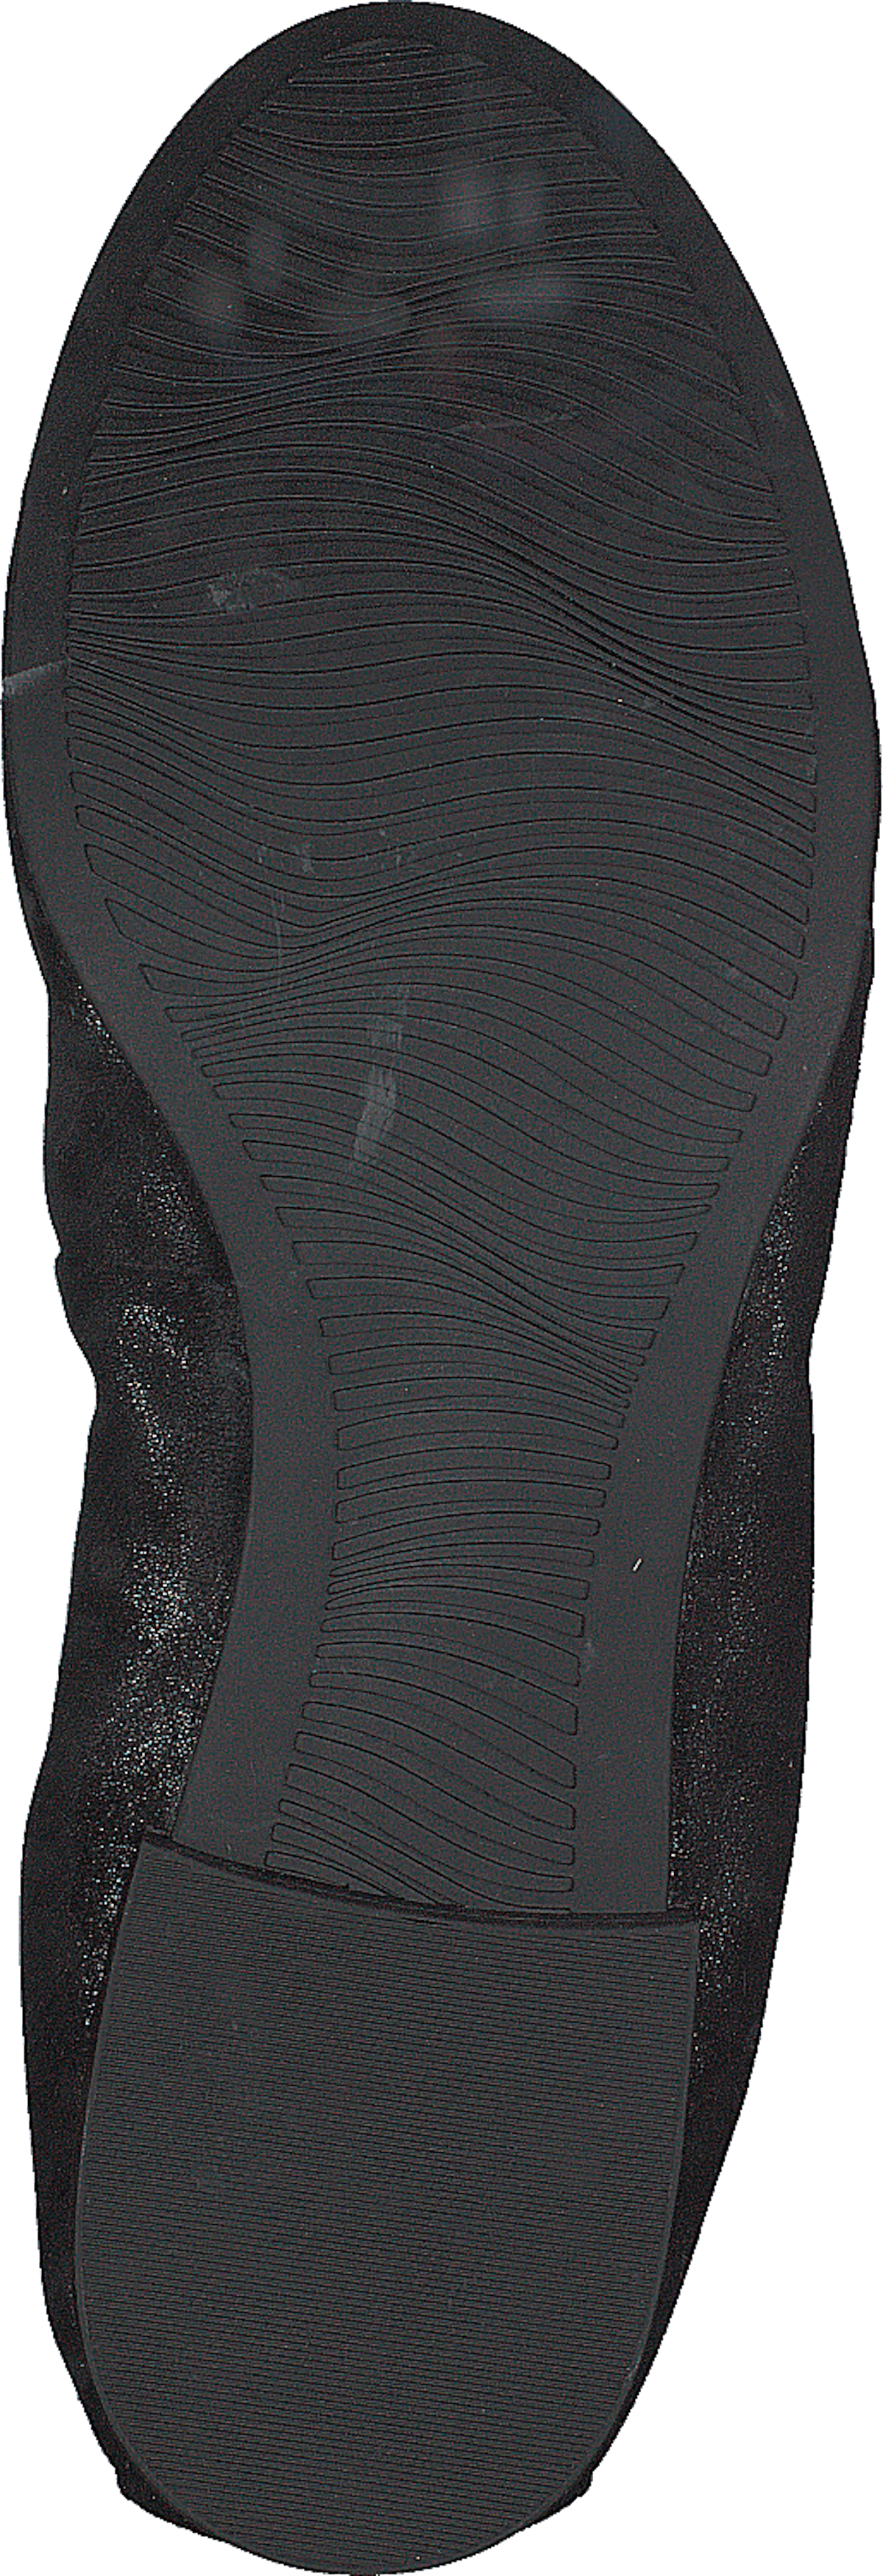 22116-006 Black Structur